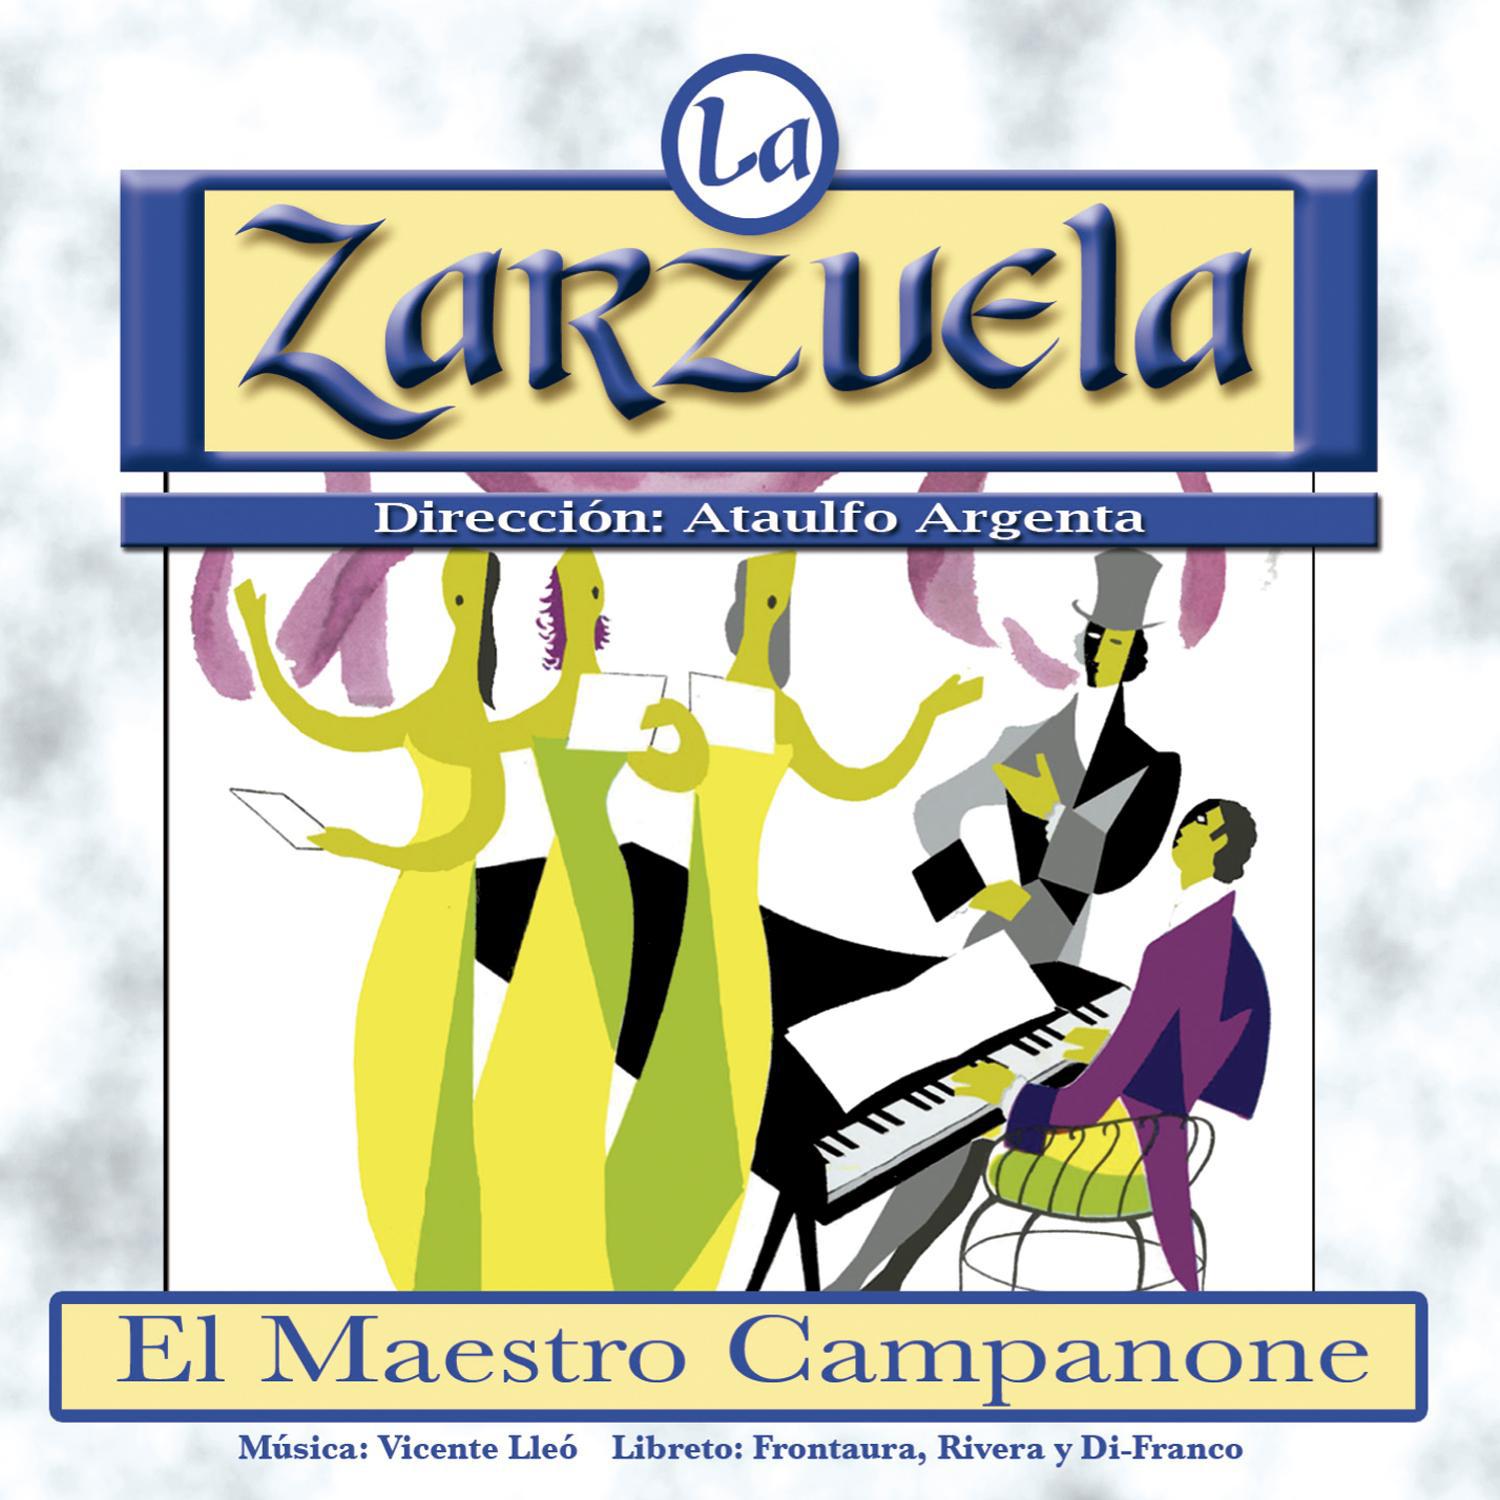 El Maestro Campanone: "Campanone y orquesta"